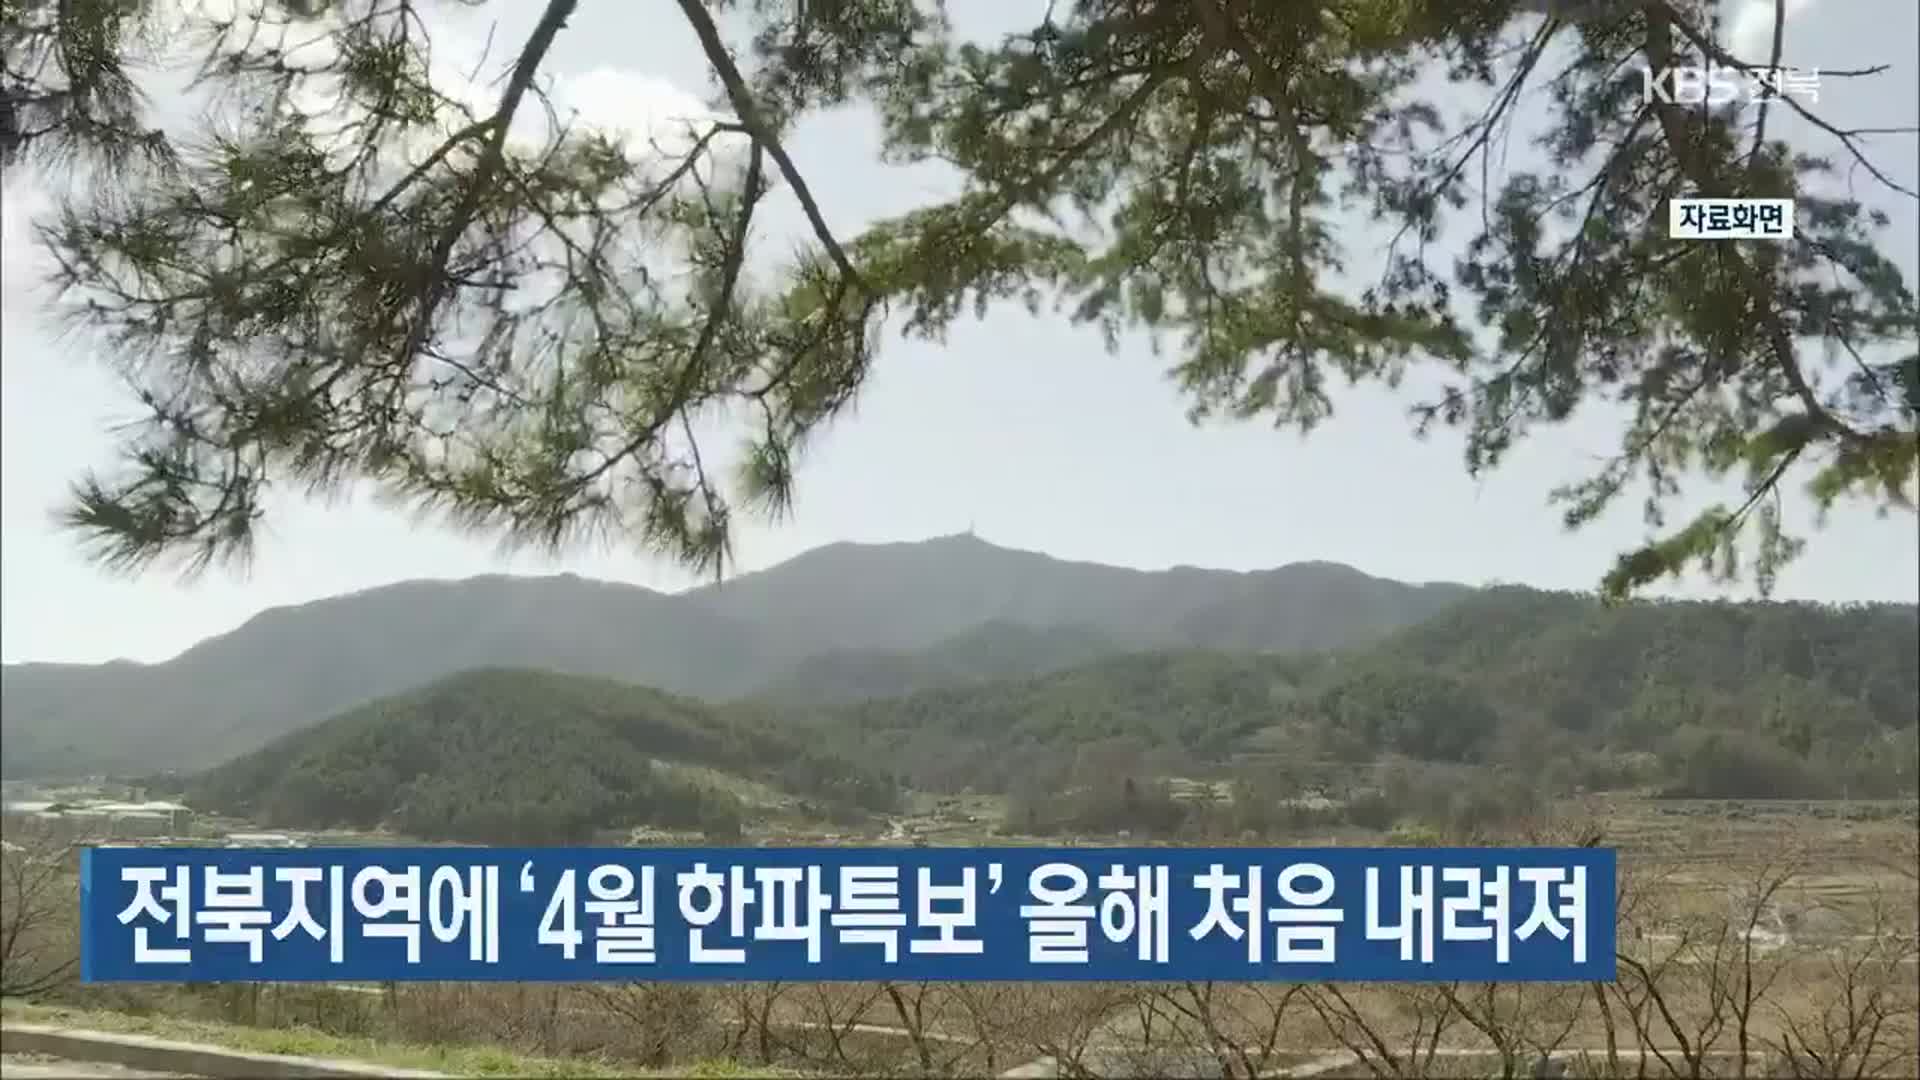 전북지역에 ‘4월 한파특보’ 올해 처음 내려져